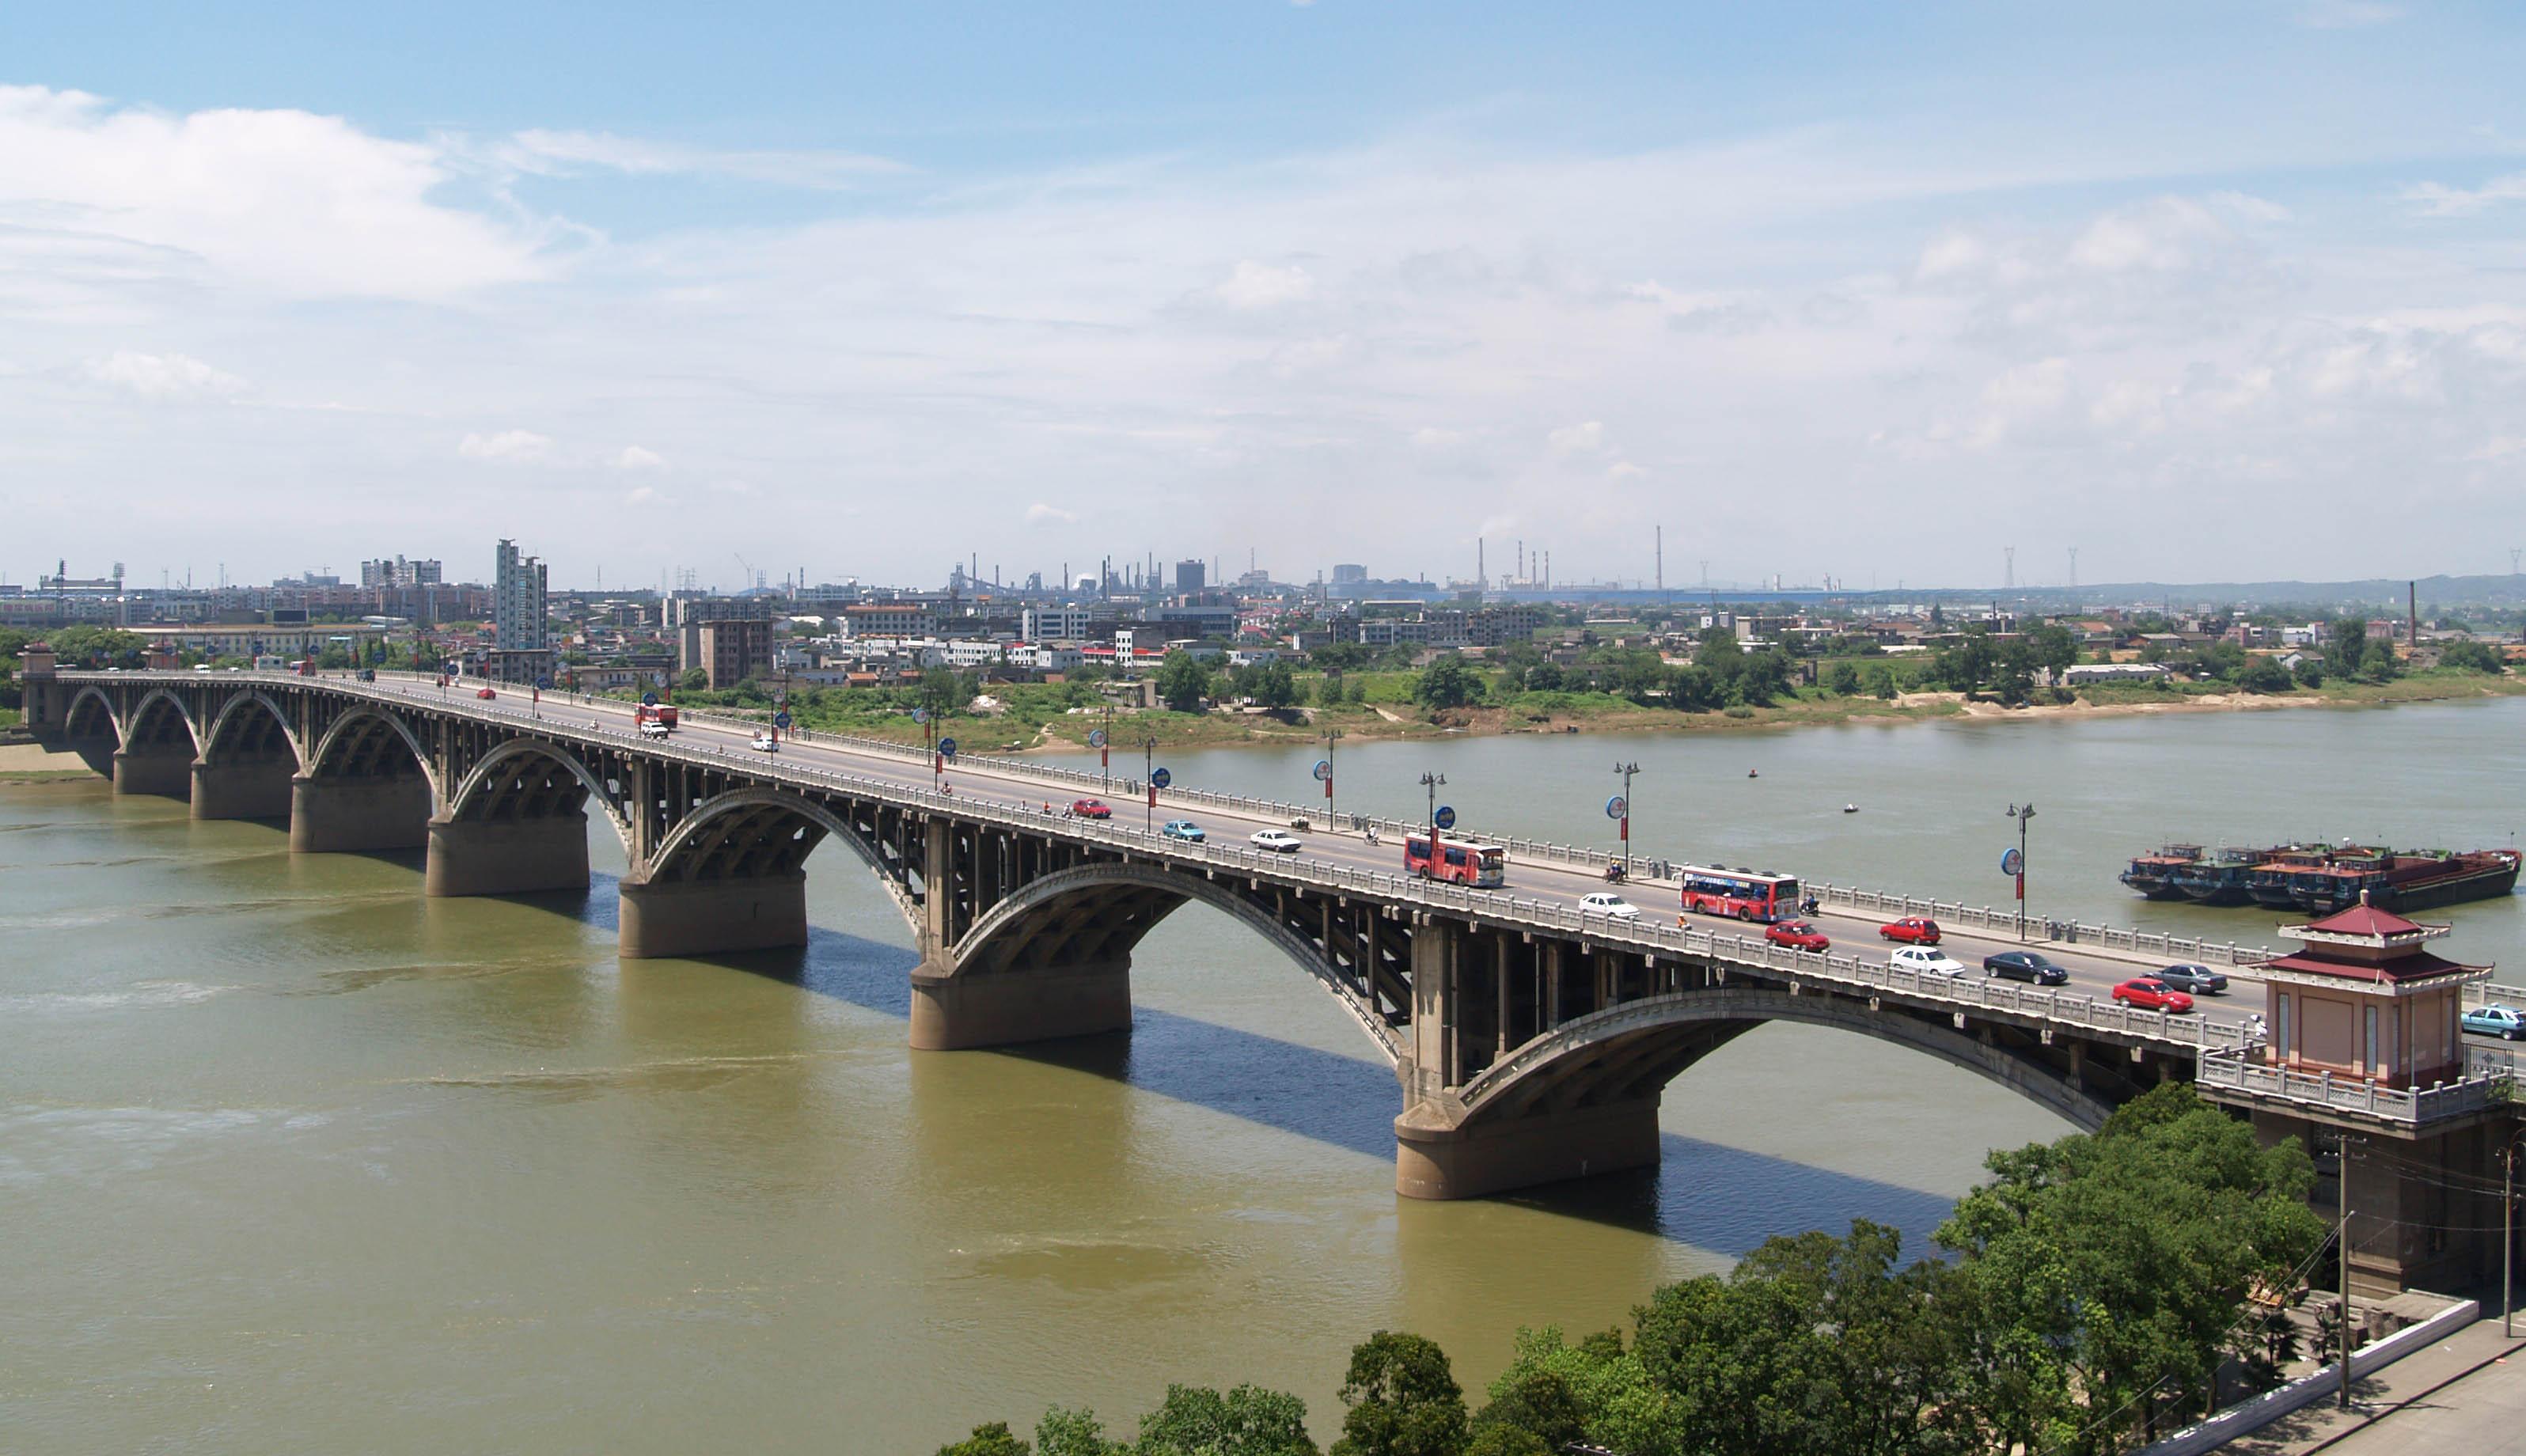 公司承建的湘潭一大桥工程被誉为“千里湘江第一桥”<h2>加拿大三分彩软件</h2>，比长沙市的第一座湘江大桥还早10年<h3>加拿大三分彩软件</h3>，一直以来是湘潭市标志性建筑